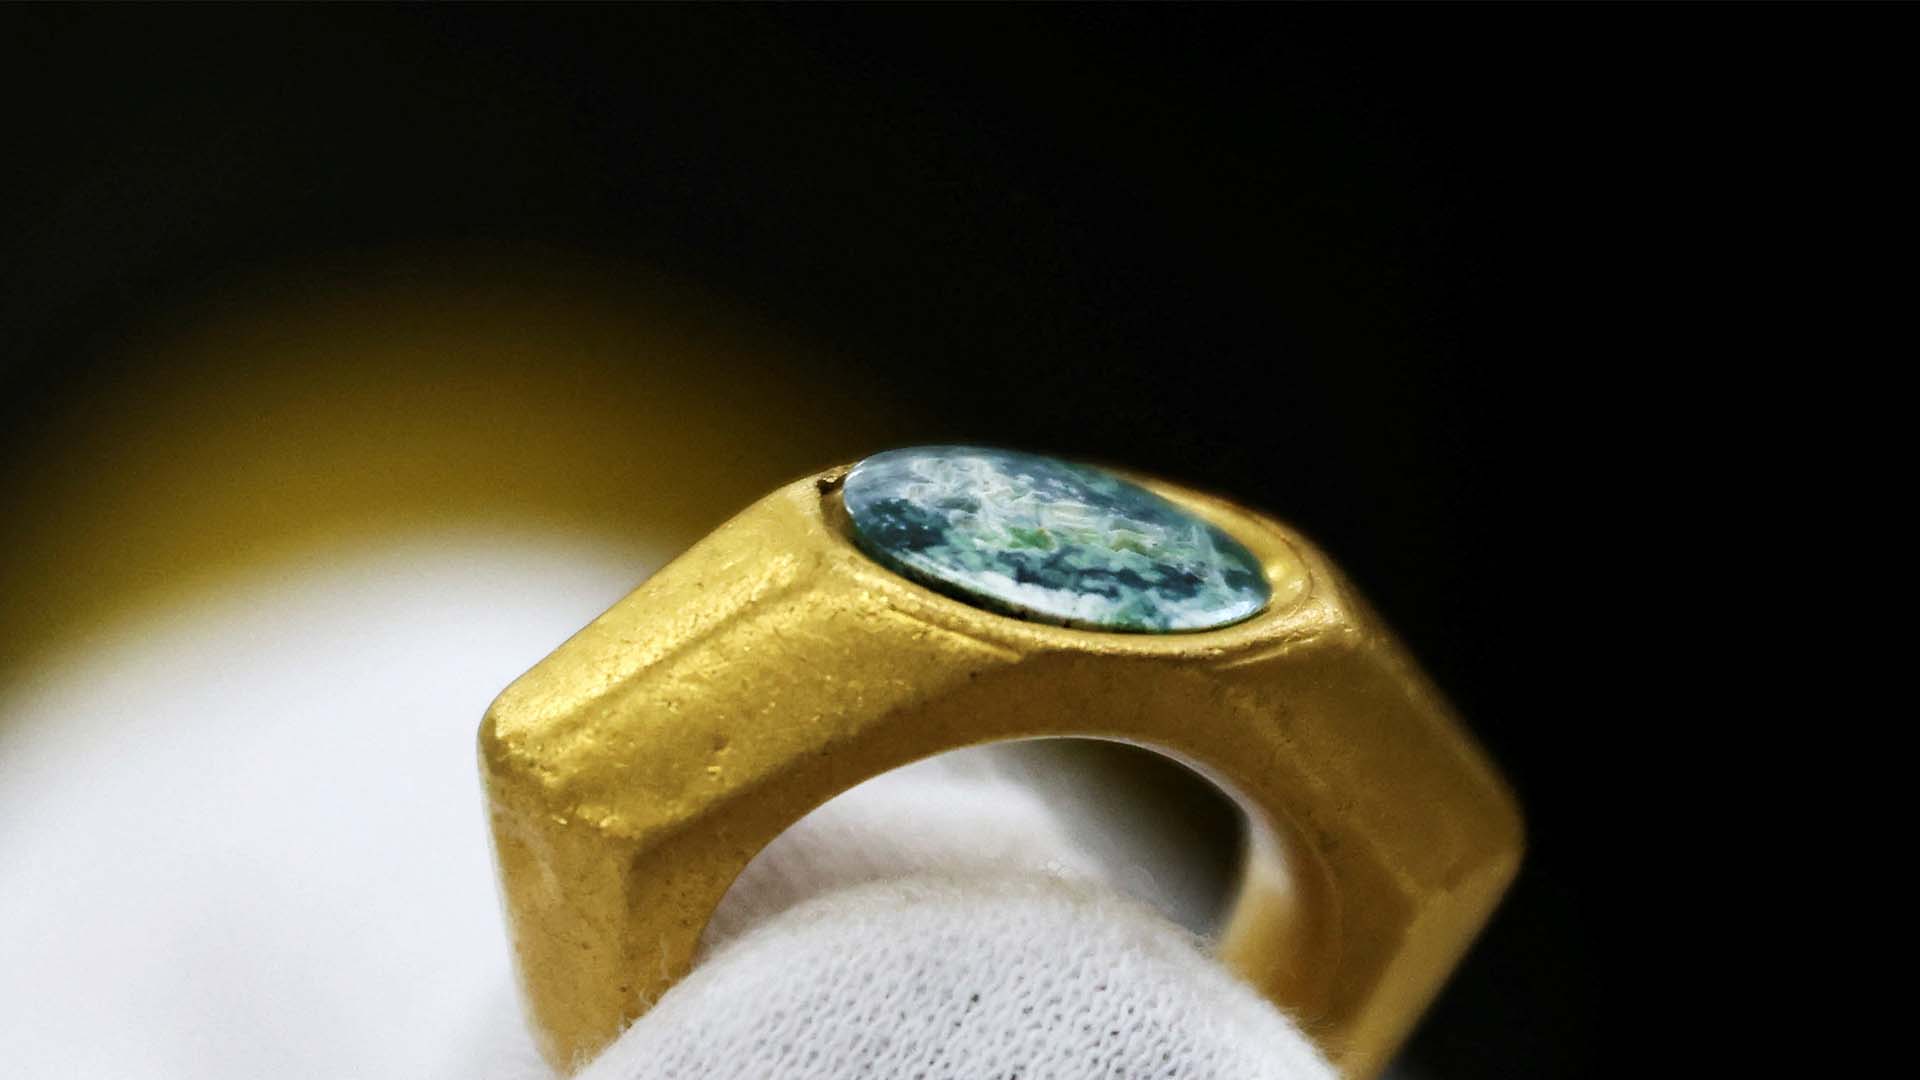 В Израиле нашли древнее кольцо с раннехристианской символикой